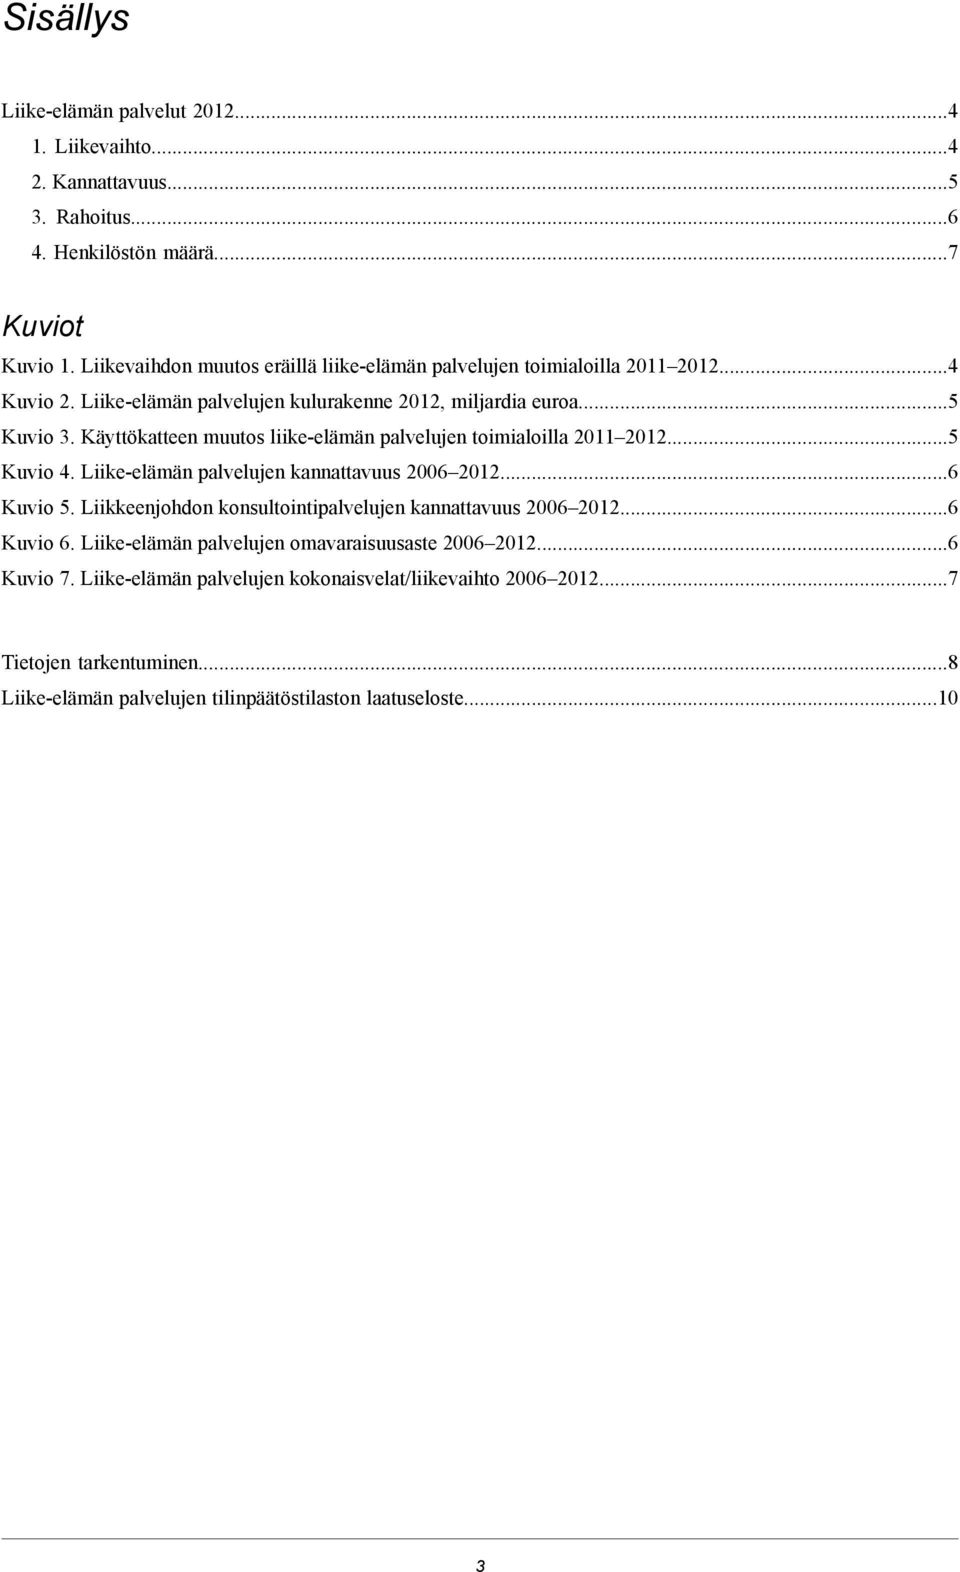 Käyttökatteen muutos liike-elämän palvelujen toimialoilla 2011 2012...5 Kuvio 4. Liike-elämän palvelujen kannattavuus 2006 2012...6 Kuvio 5.